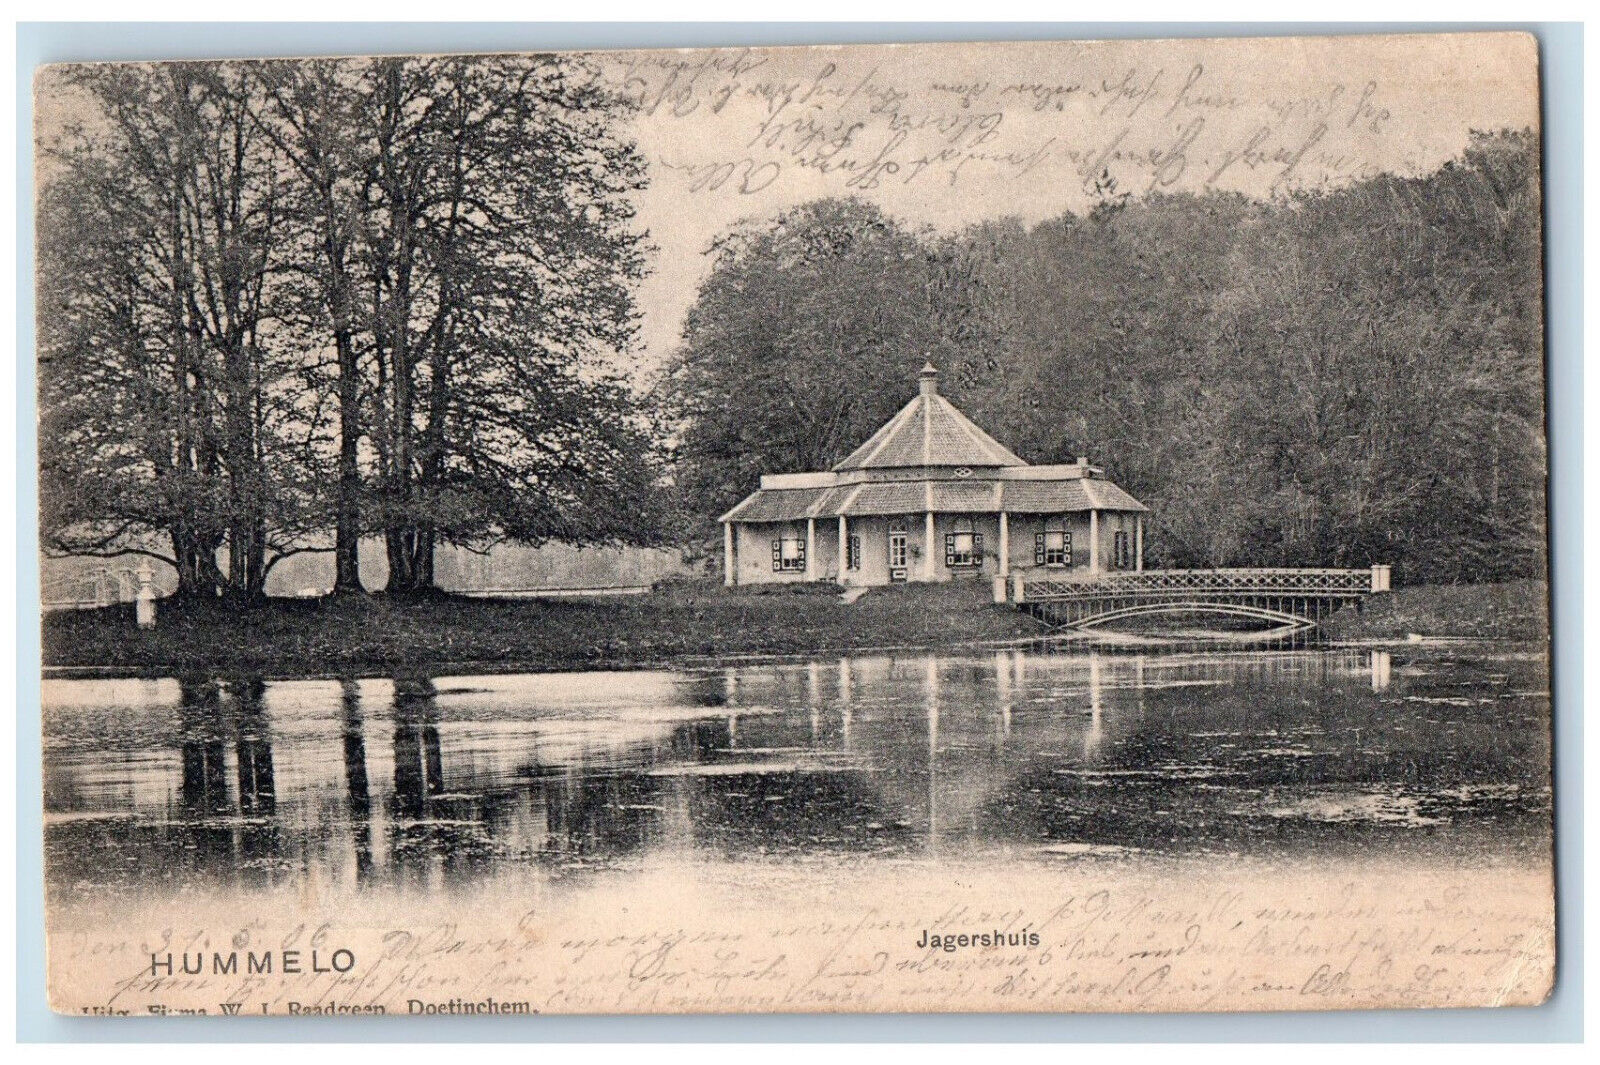 Hummelo Gelderland Netherlands Postcard Hunter's House 1906 Antique Posted